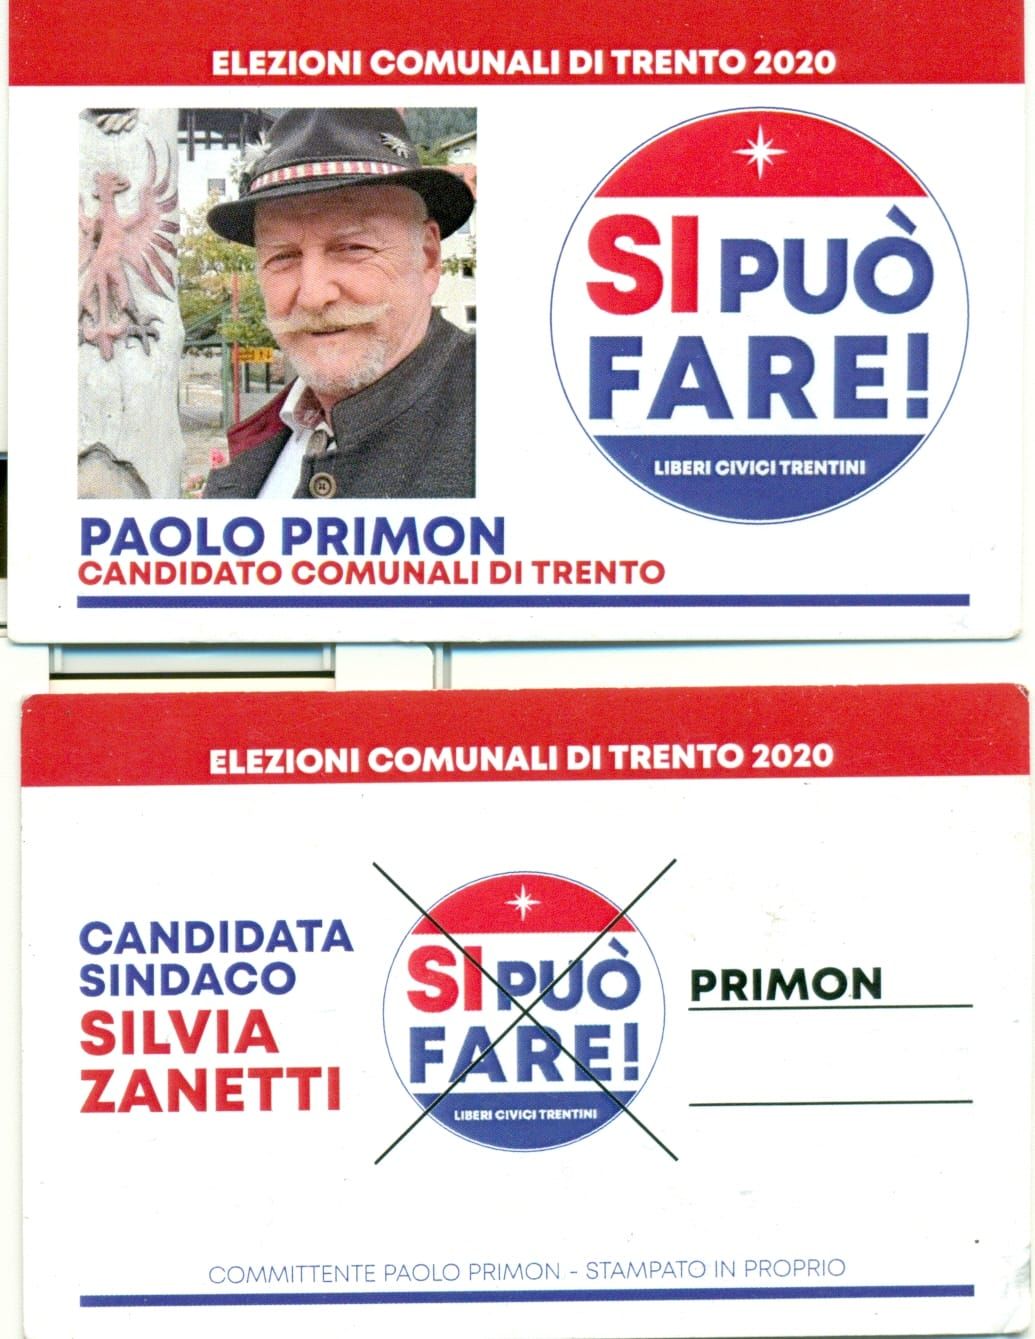 Come votare il 20-21 settembre - Elezioni comunali Trento 2020